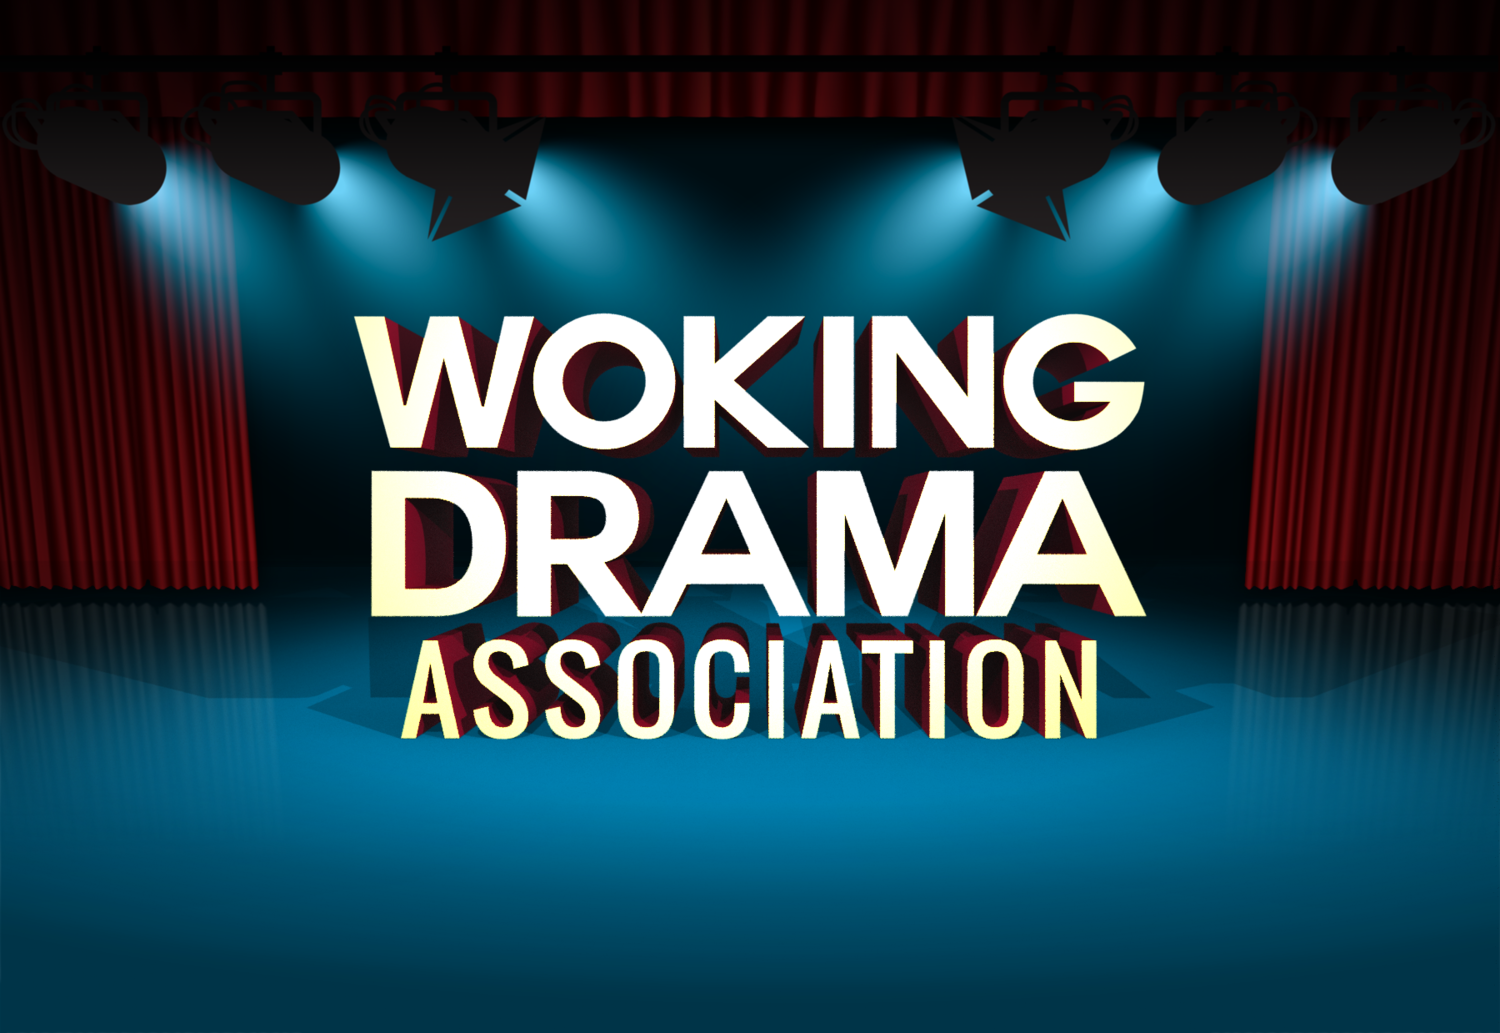 Woking Drama Association